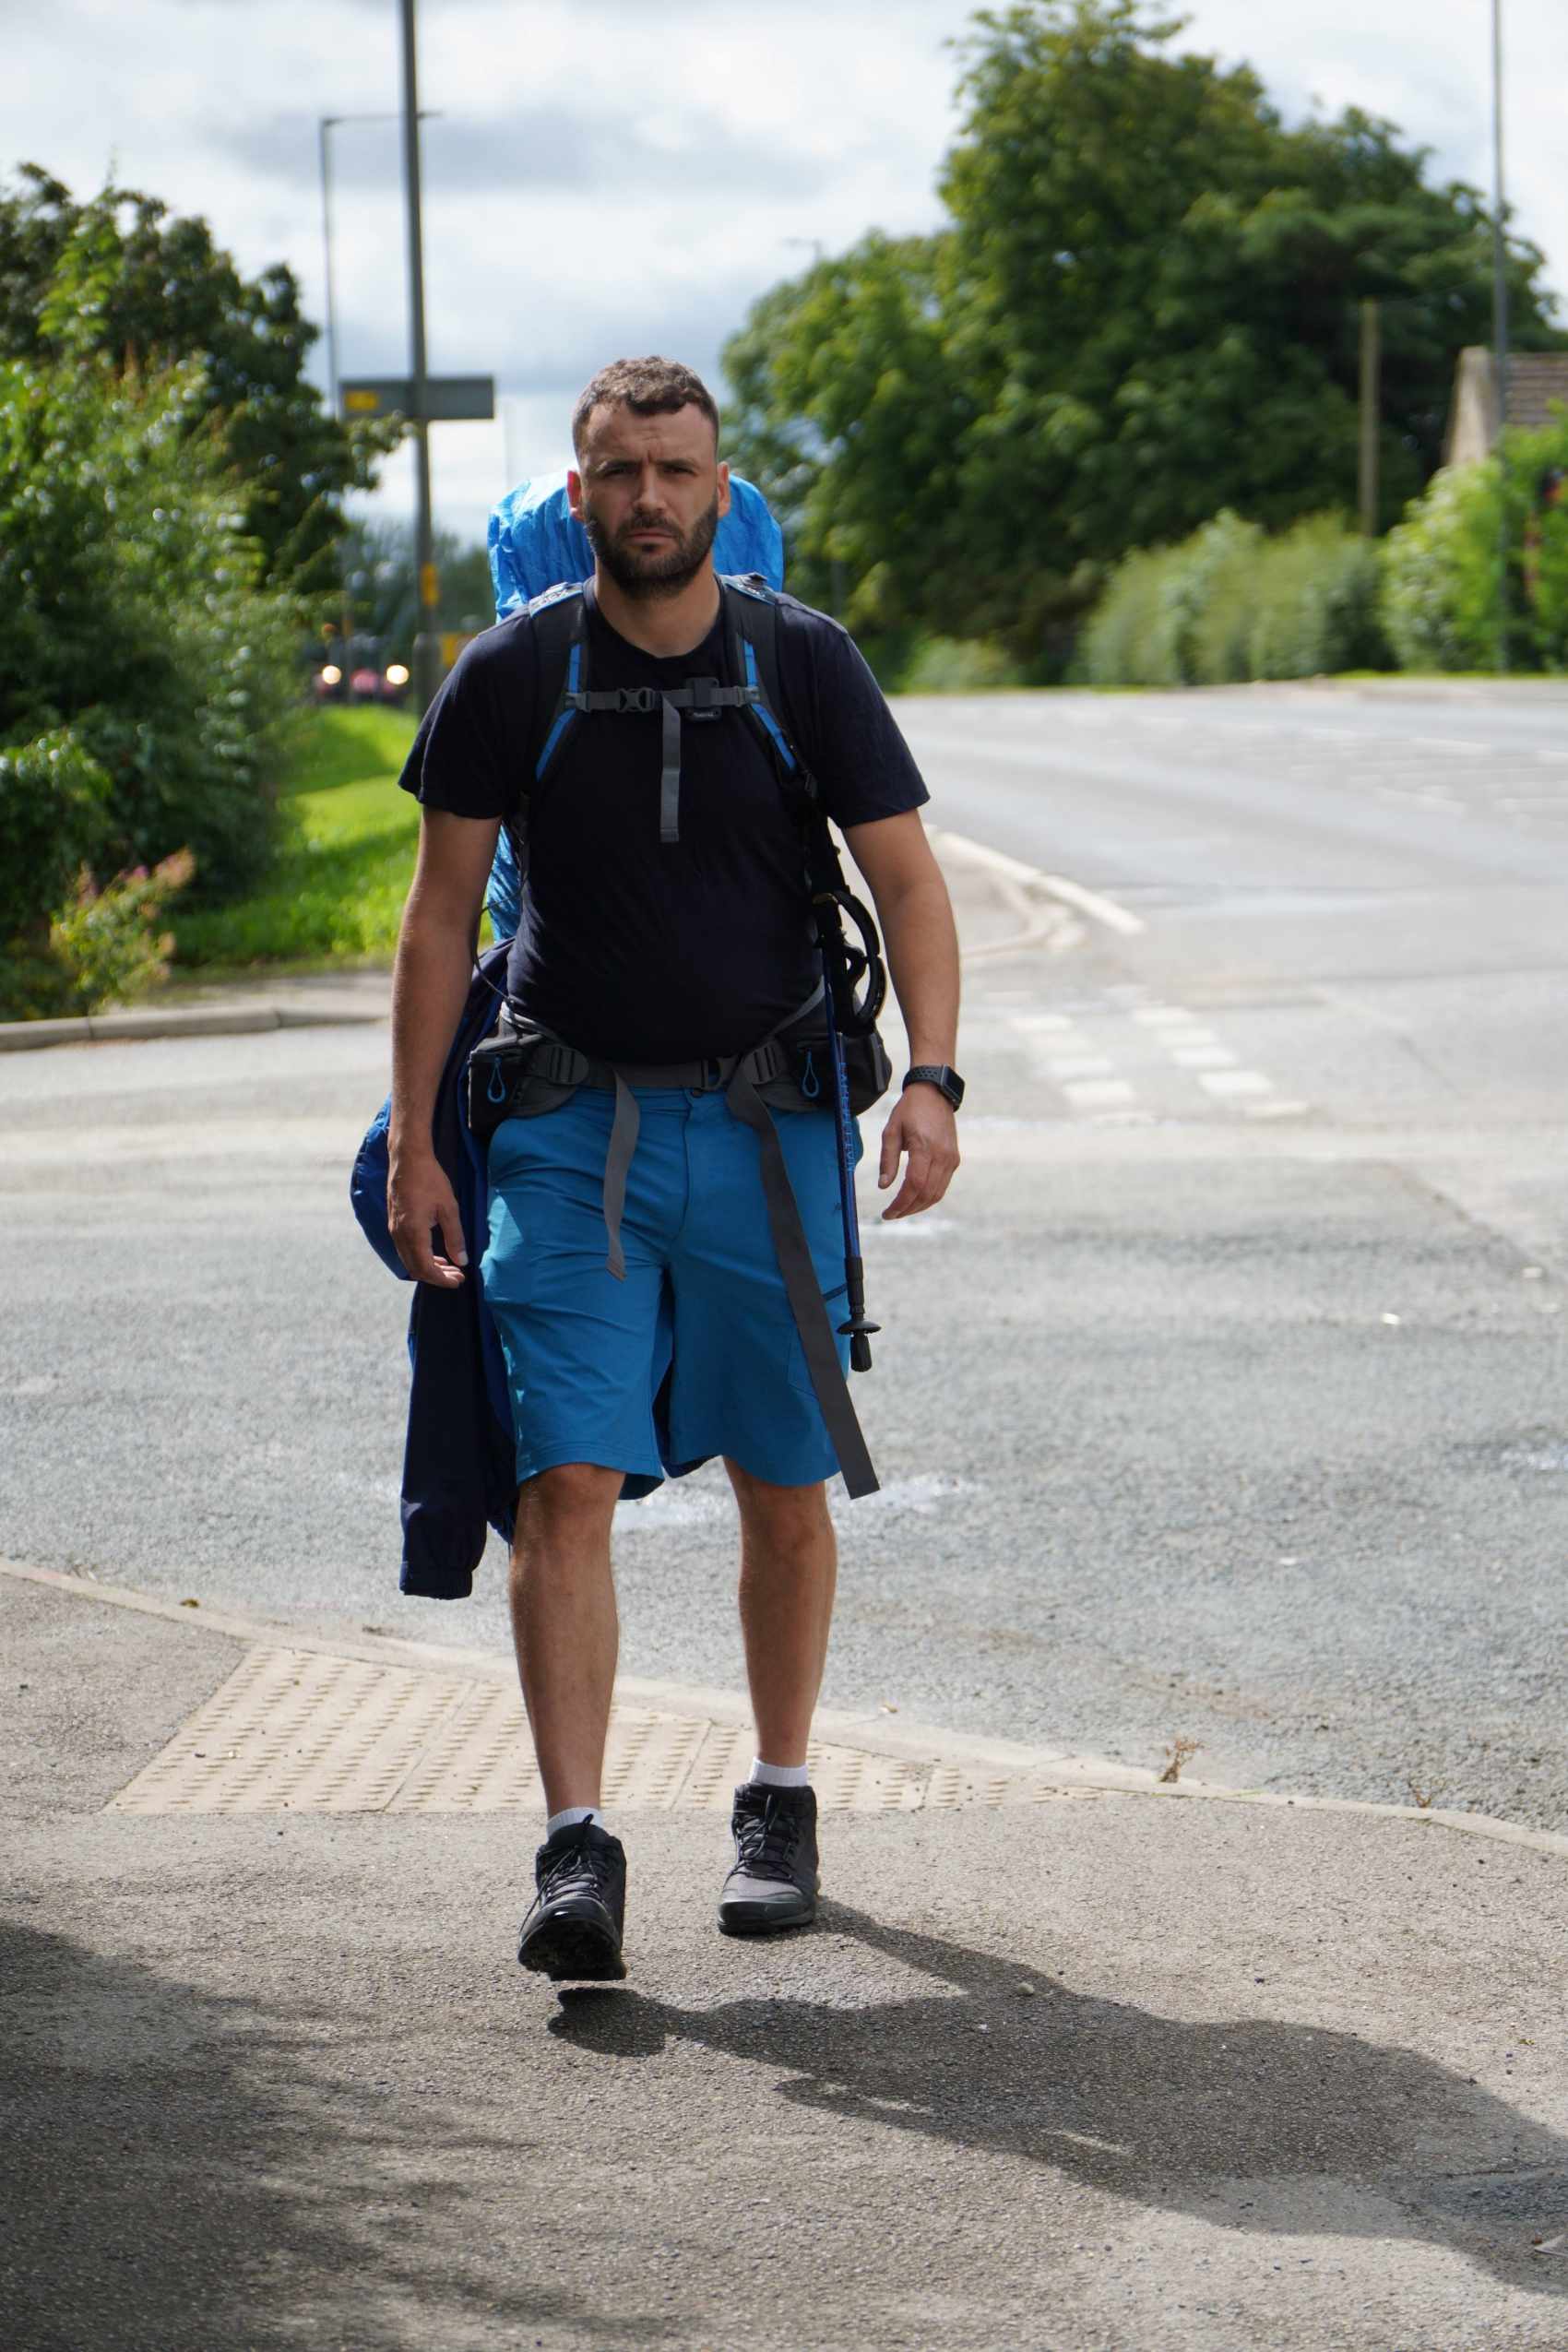 Gavin Jones, aged 33, is walking 300 miles from Swansea